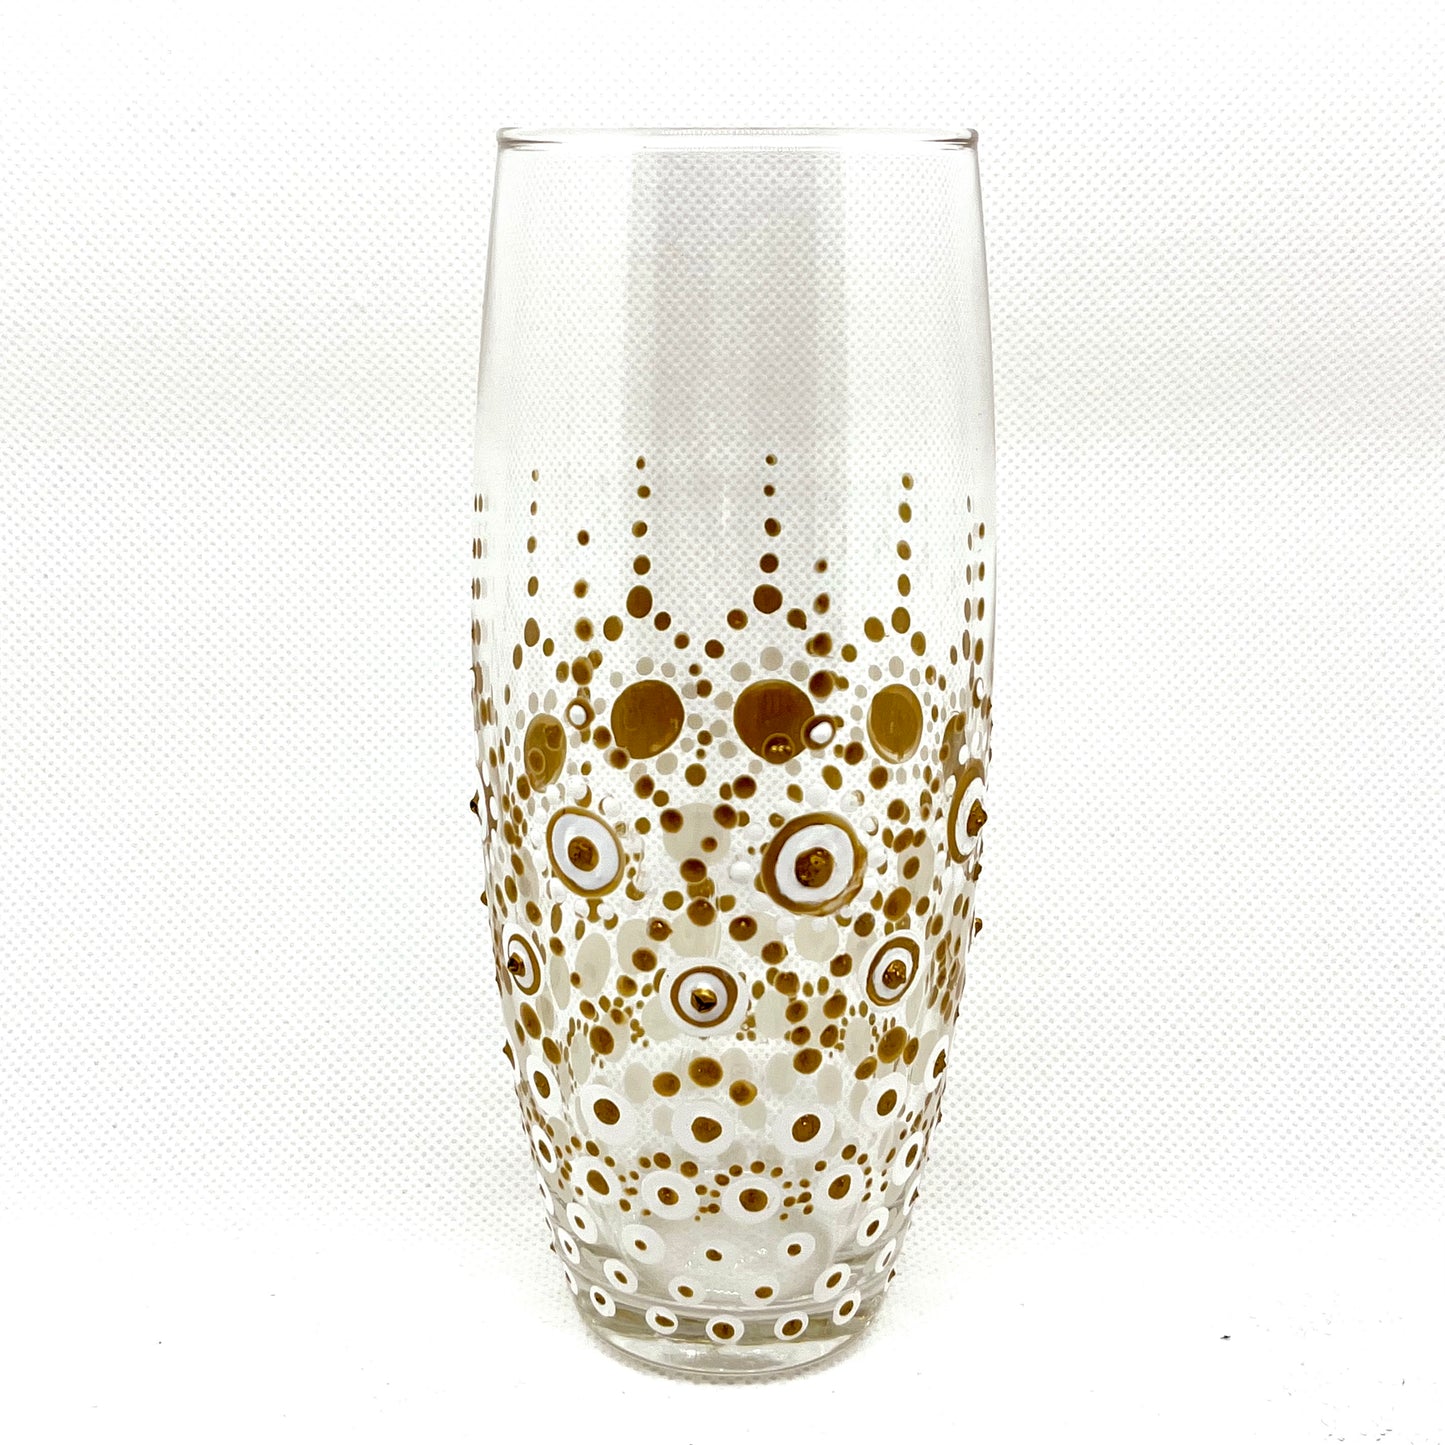 Dot Mandala Art | Bride and Groom Champagne Glasses | Stem & Stemless